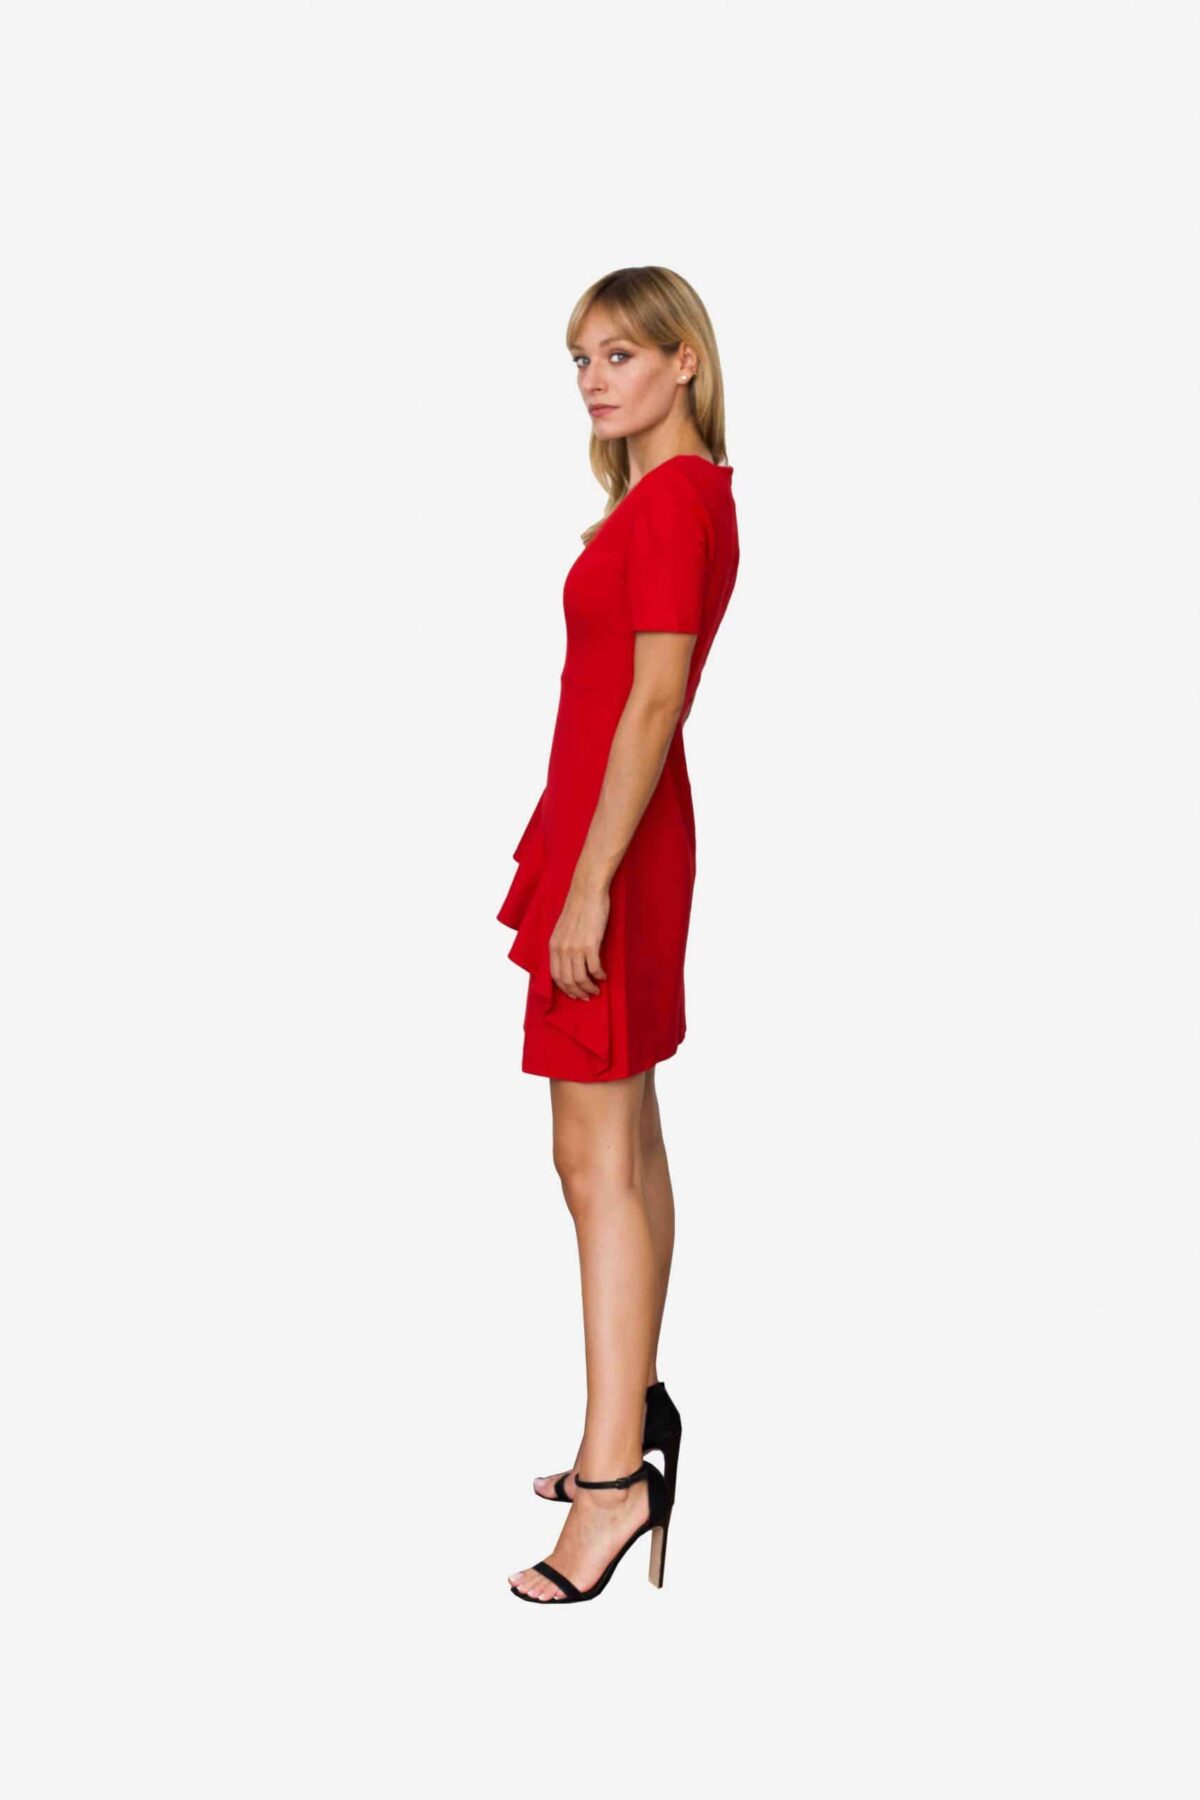 Kleid Loretta von SANOGE. Feminines Etuikleid in rot mit Volant und kurzem Arm. Knielang. Aus rotem Premium Jersey. Deutsche Designer Mode.